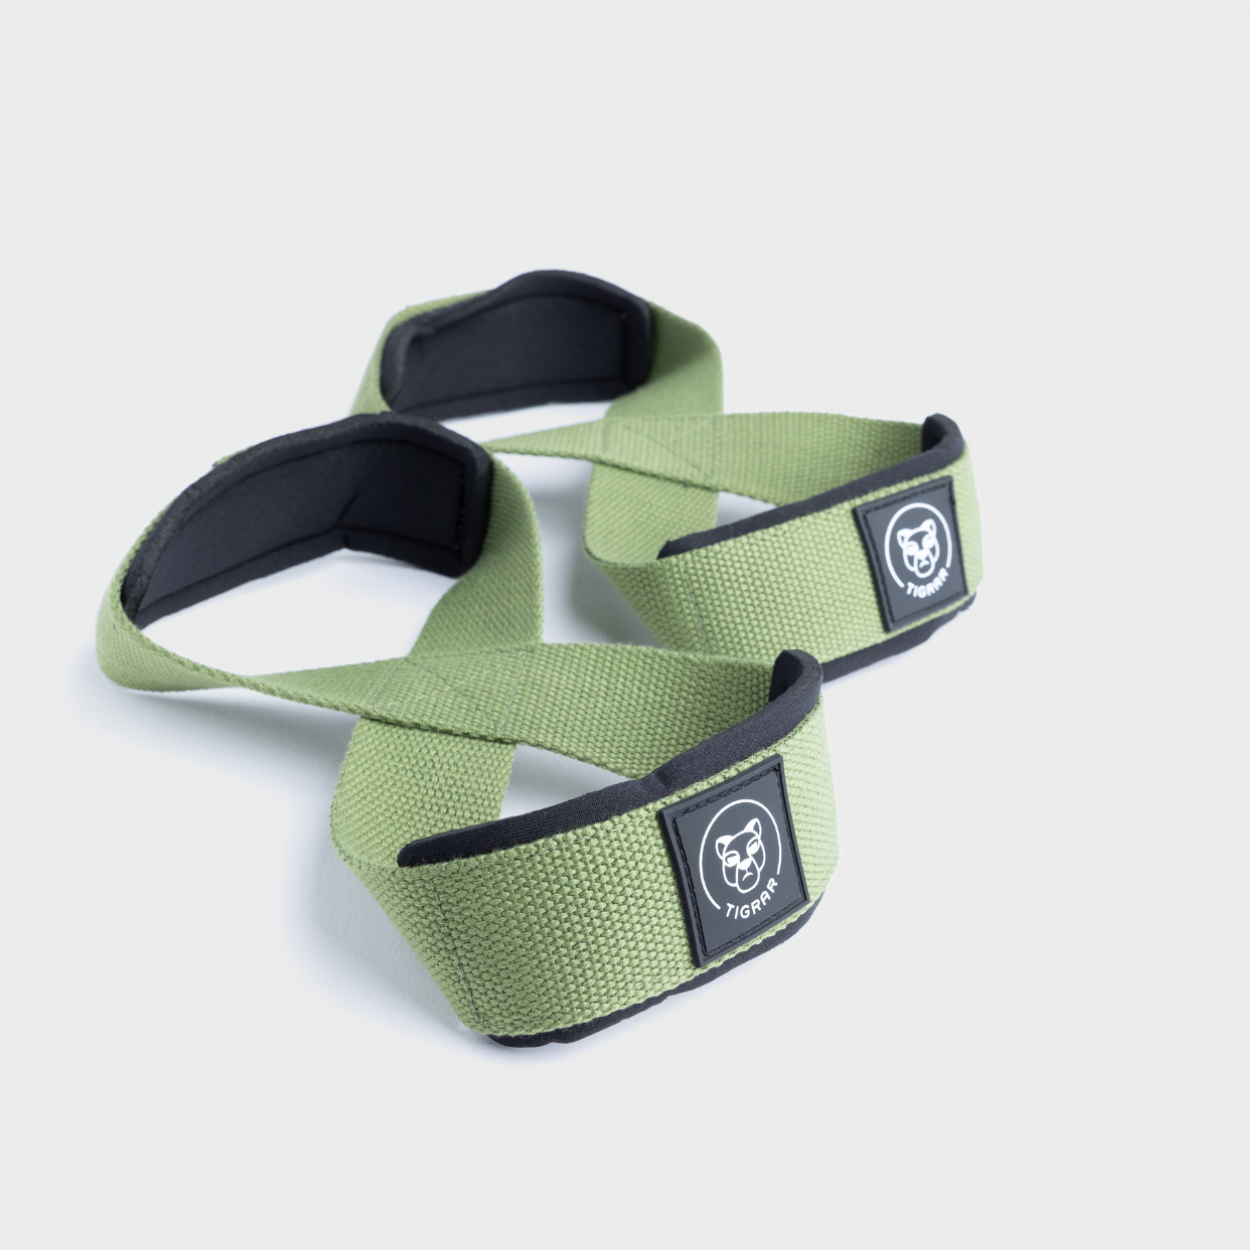 Functionele groene Tigrar lifting straps in het praktische Figure 8 ontwerp, voor een grijze achtergrond.